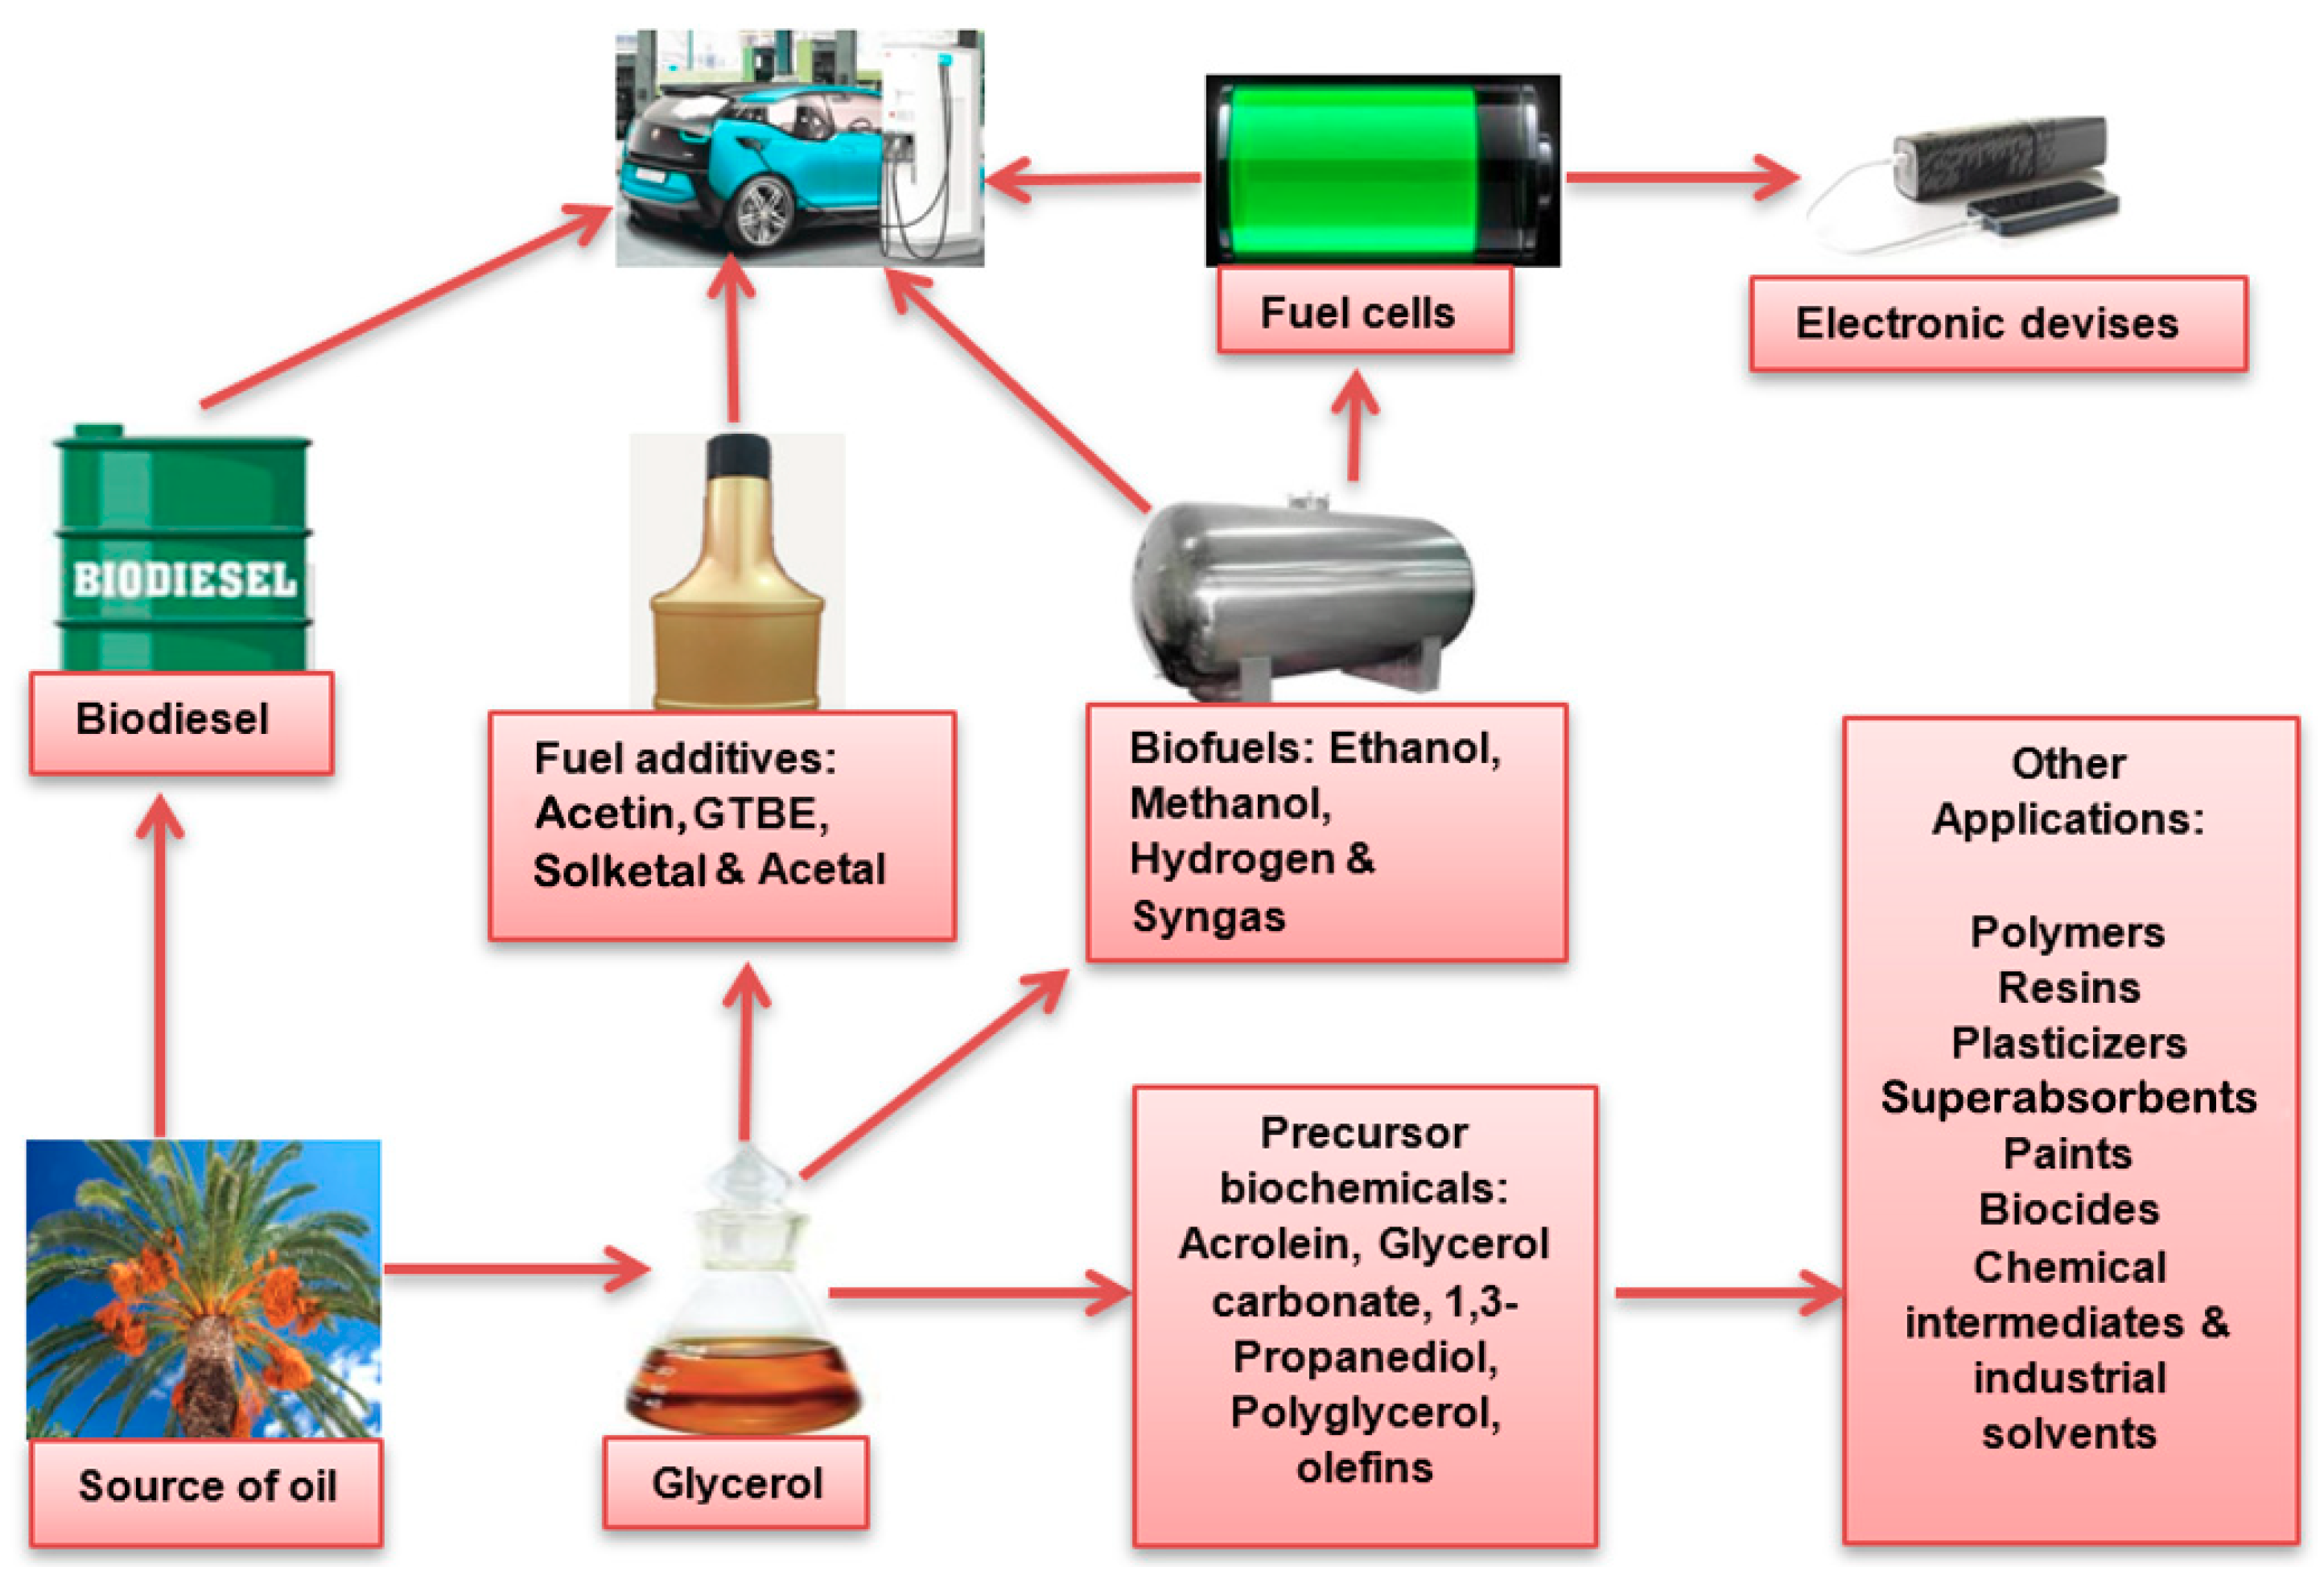 Bio Diesel Additiv